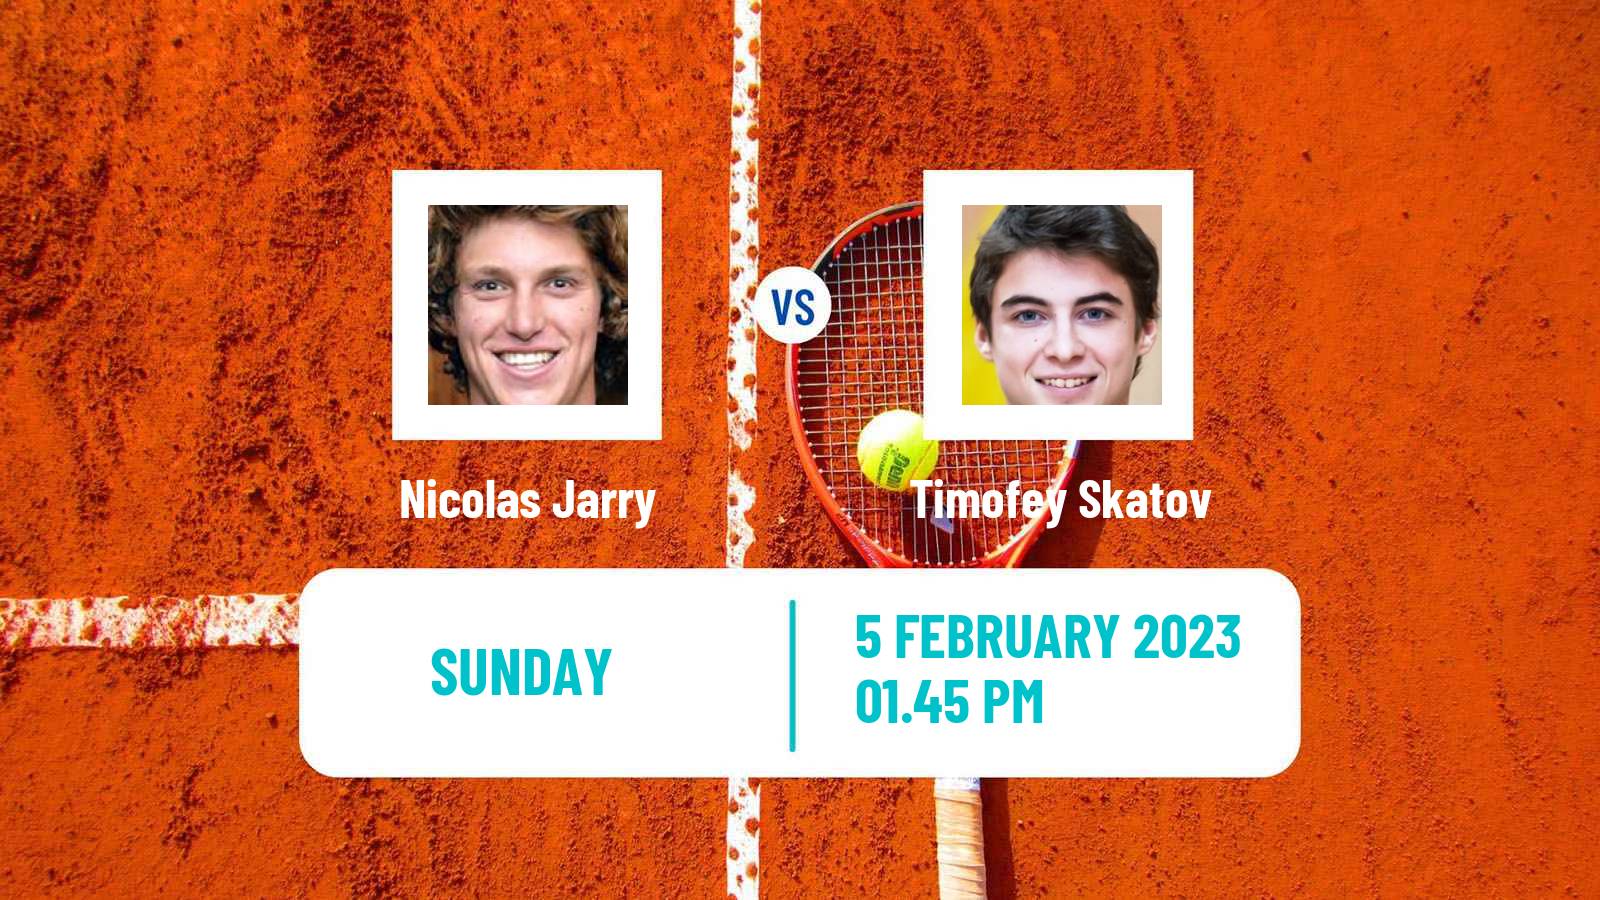 Tennis Davis Cup World Group Nicolas Jarry - Timofey Skatov